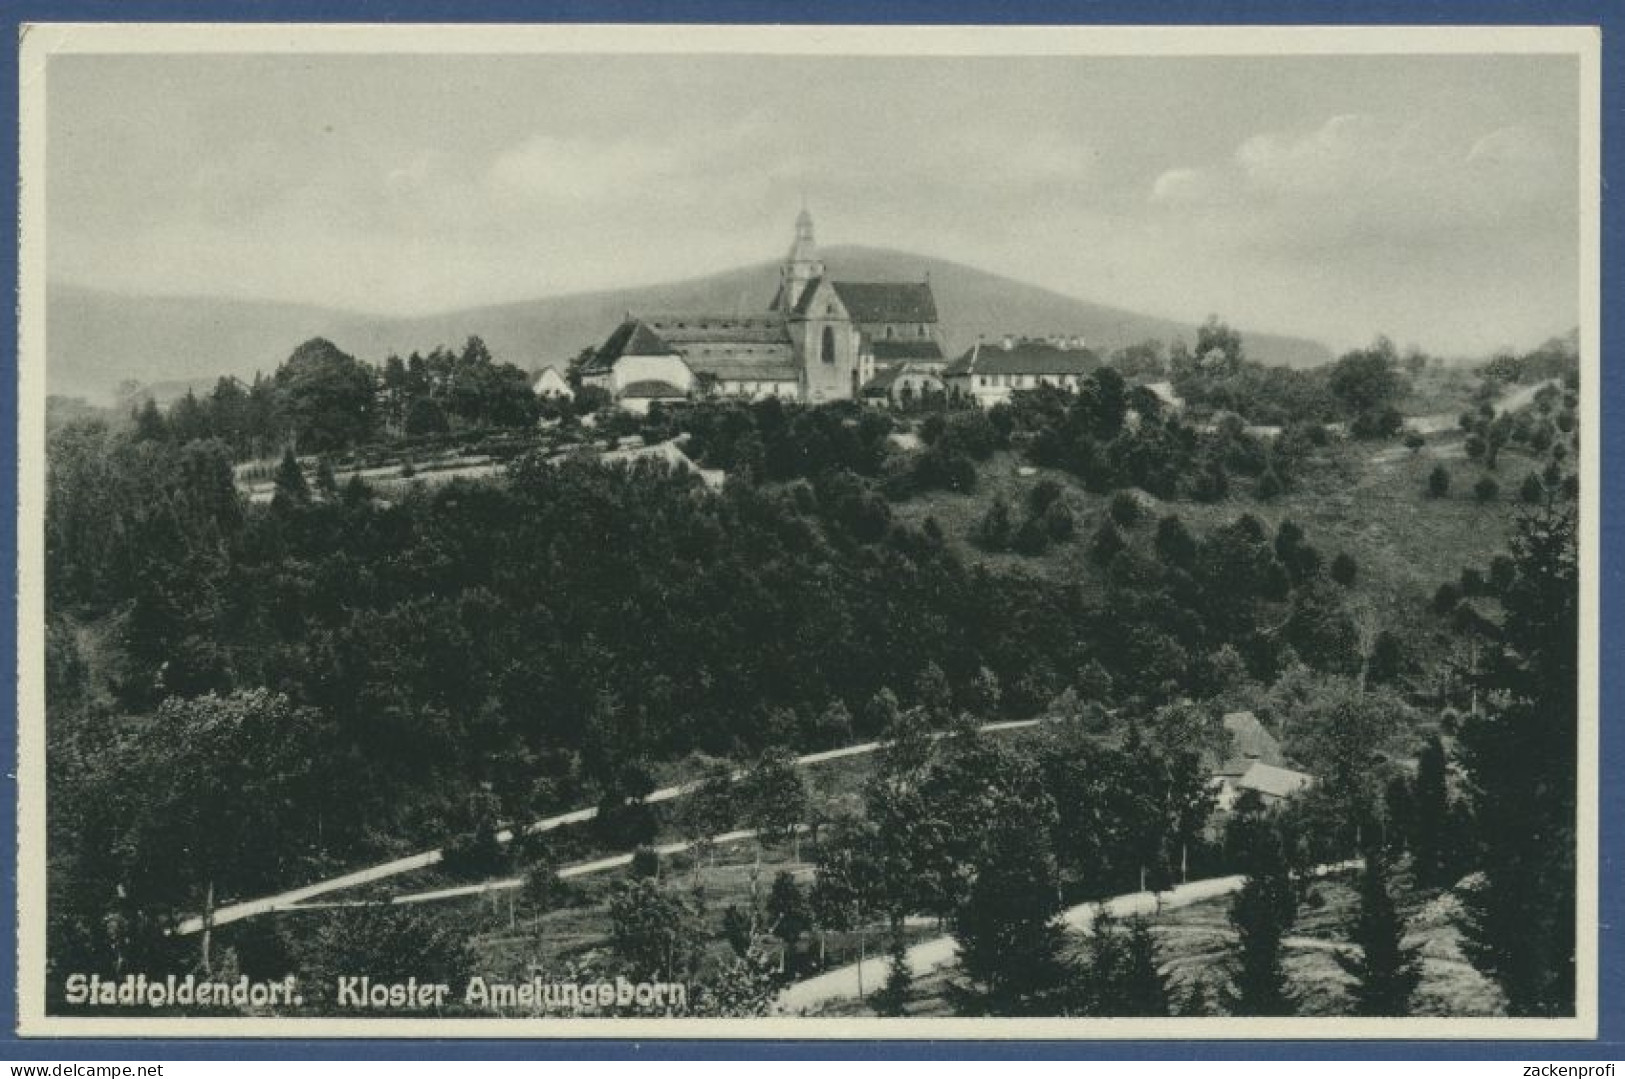 Stadtoldendorf Kloster Amelungsborn Foto, Ungebraucht (AK1678) - Holzminden